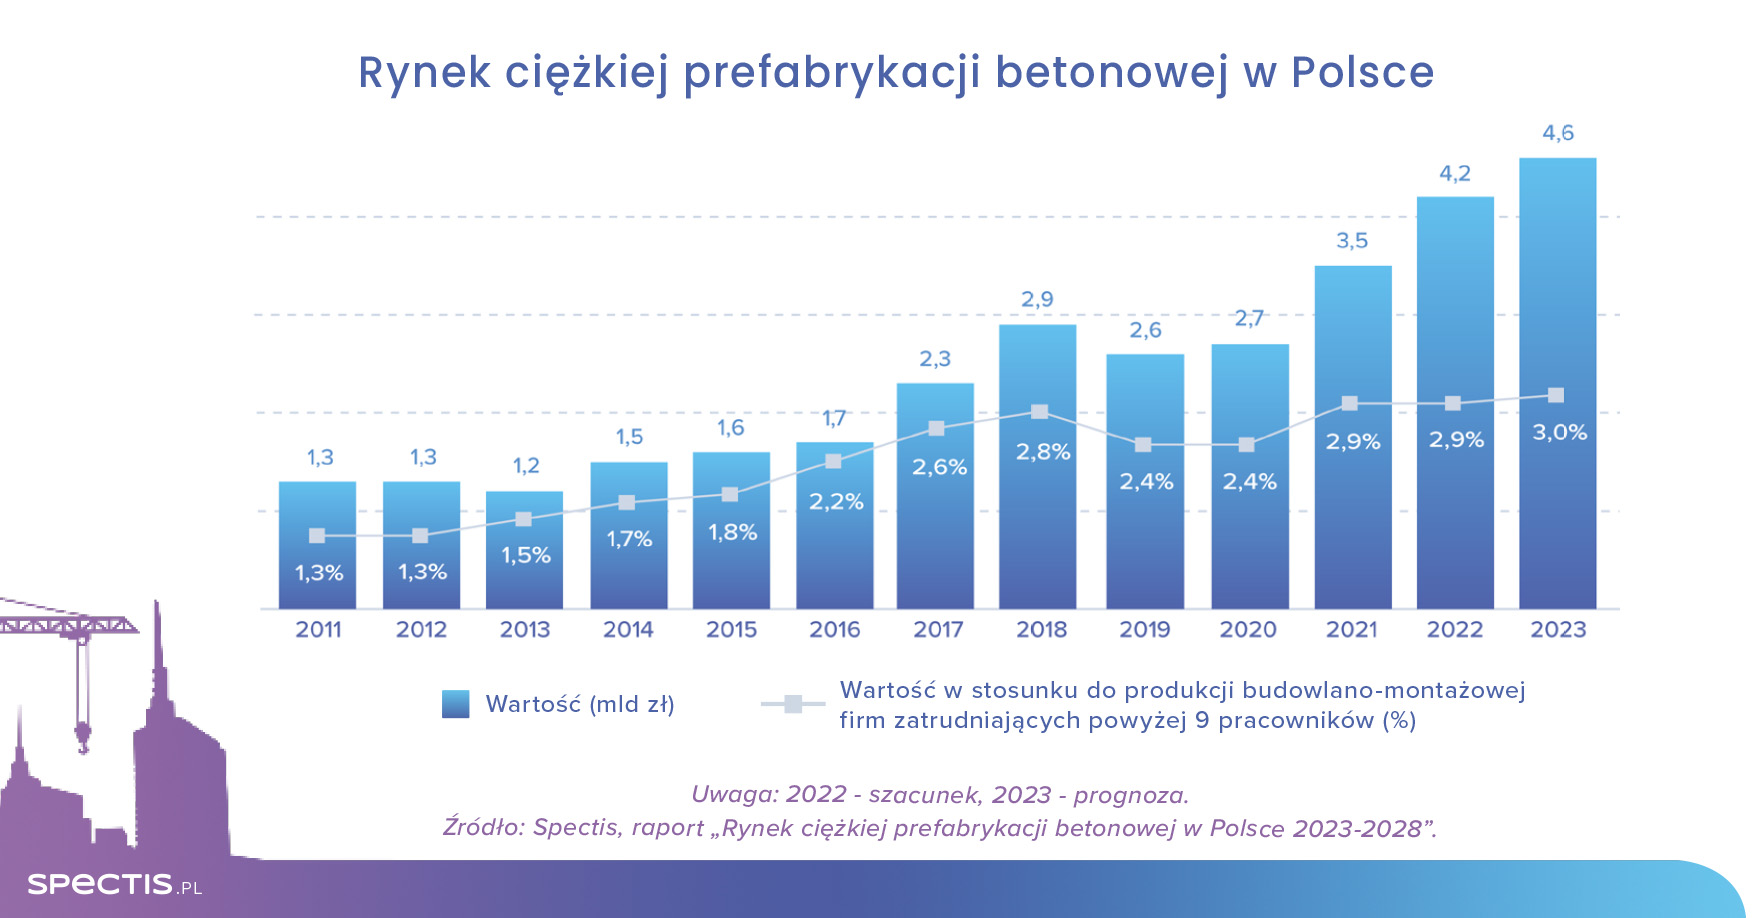 Wartość rynku ciężkiej prefabrykacji betonowej w Polsce do 2025 r. sięgnie 5 mld zł